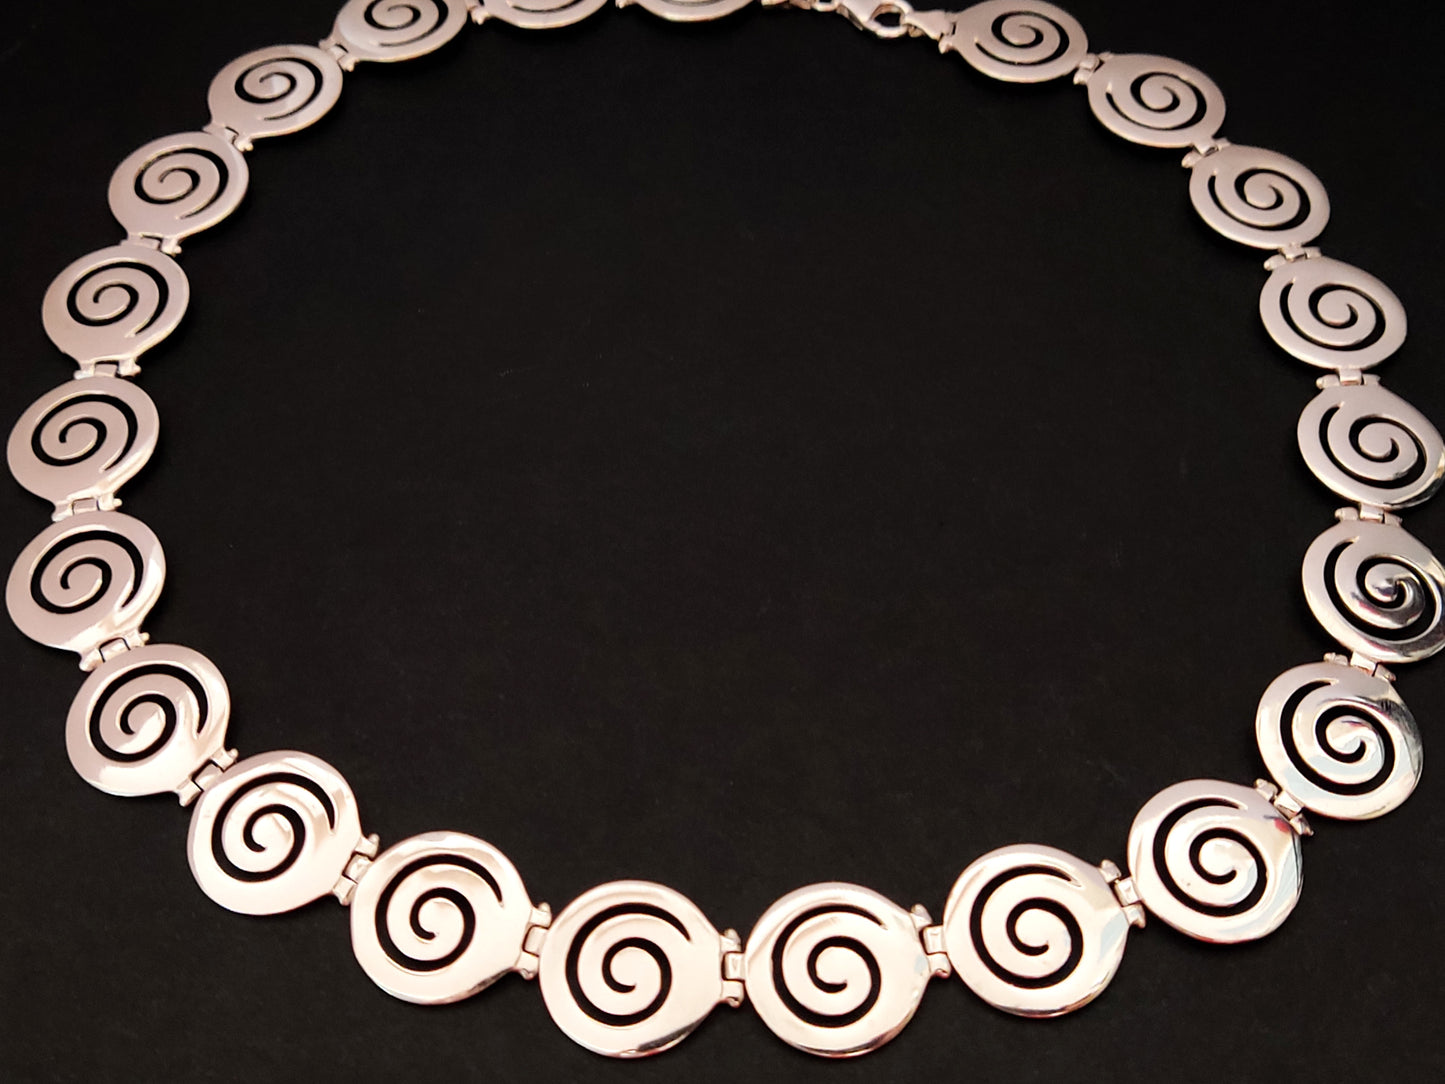 Collier en argent spirale grecque 19 mm